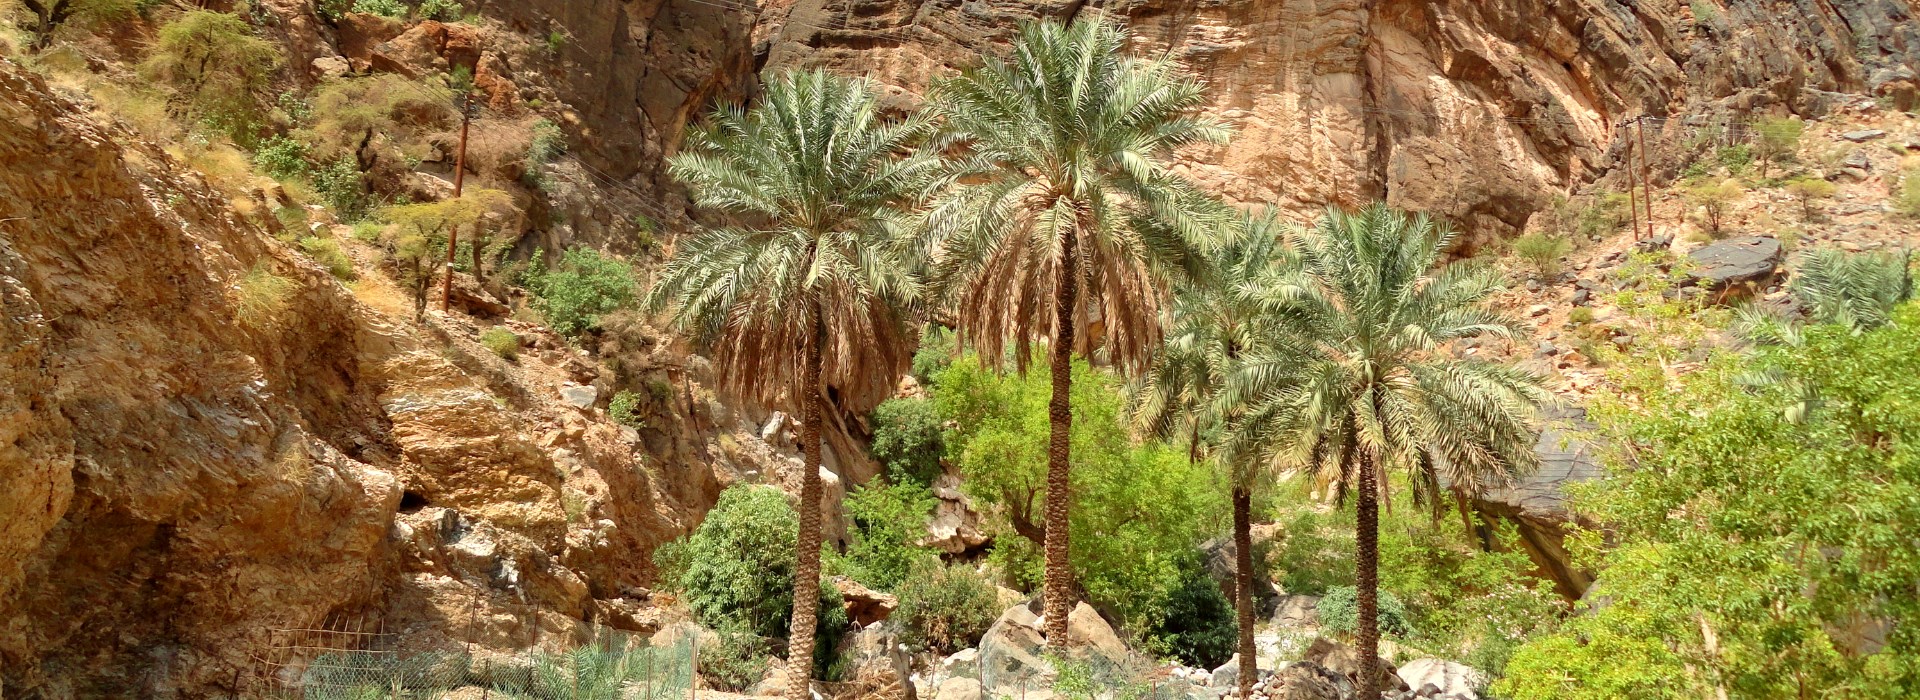 Visiter Wadi Bani Awf - Oman